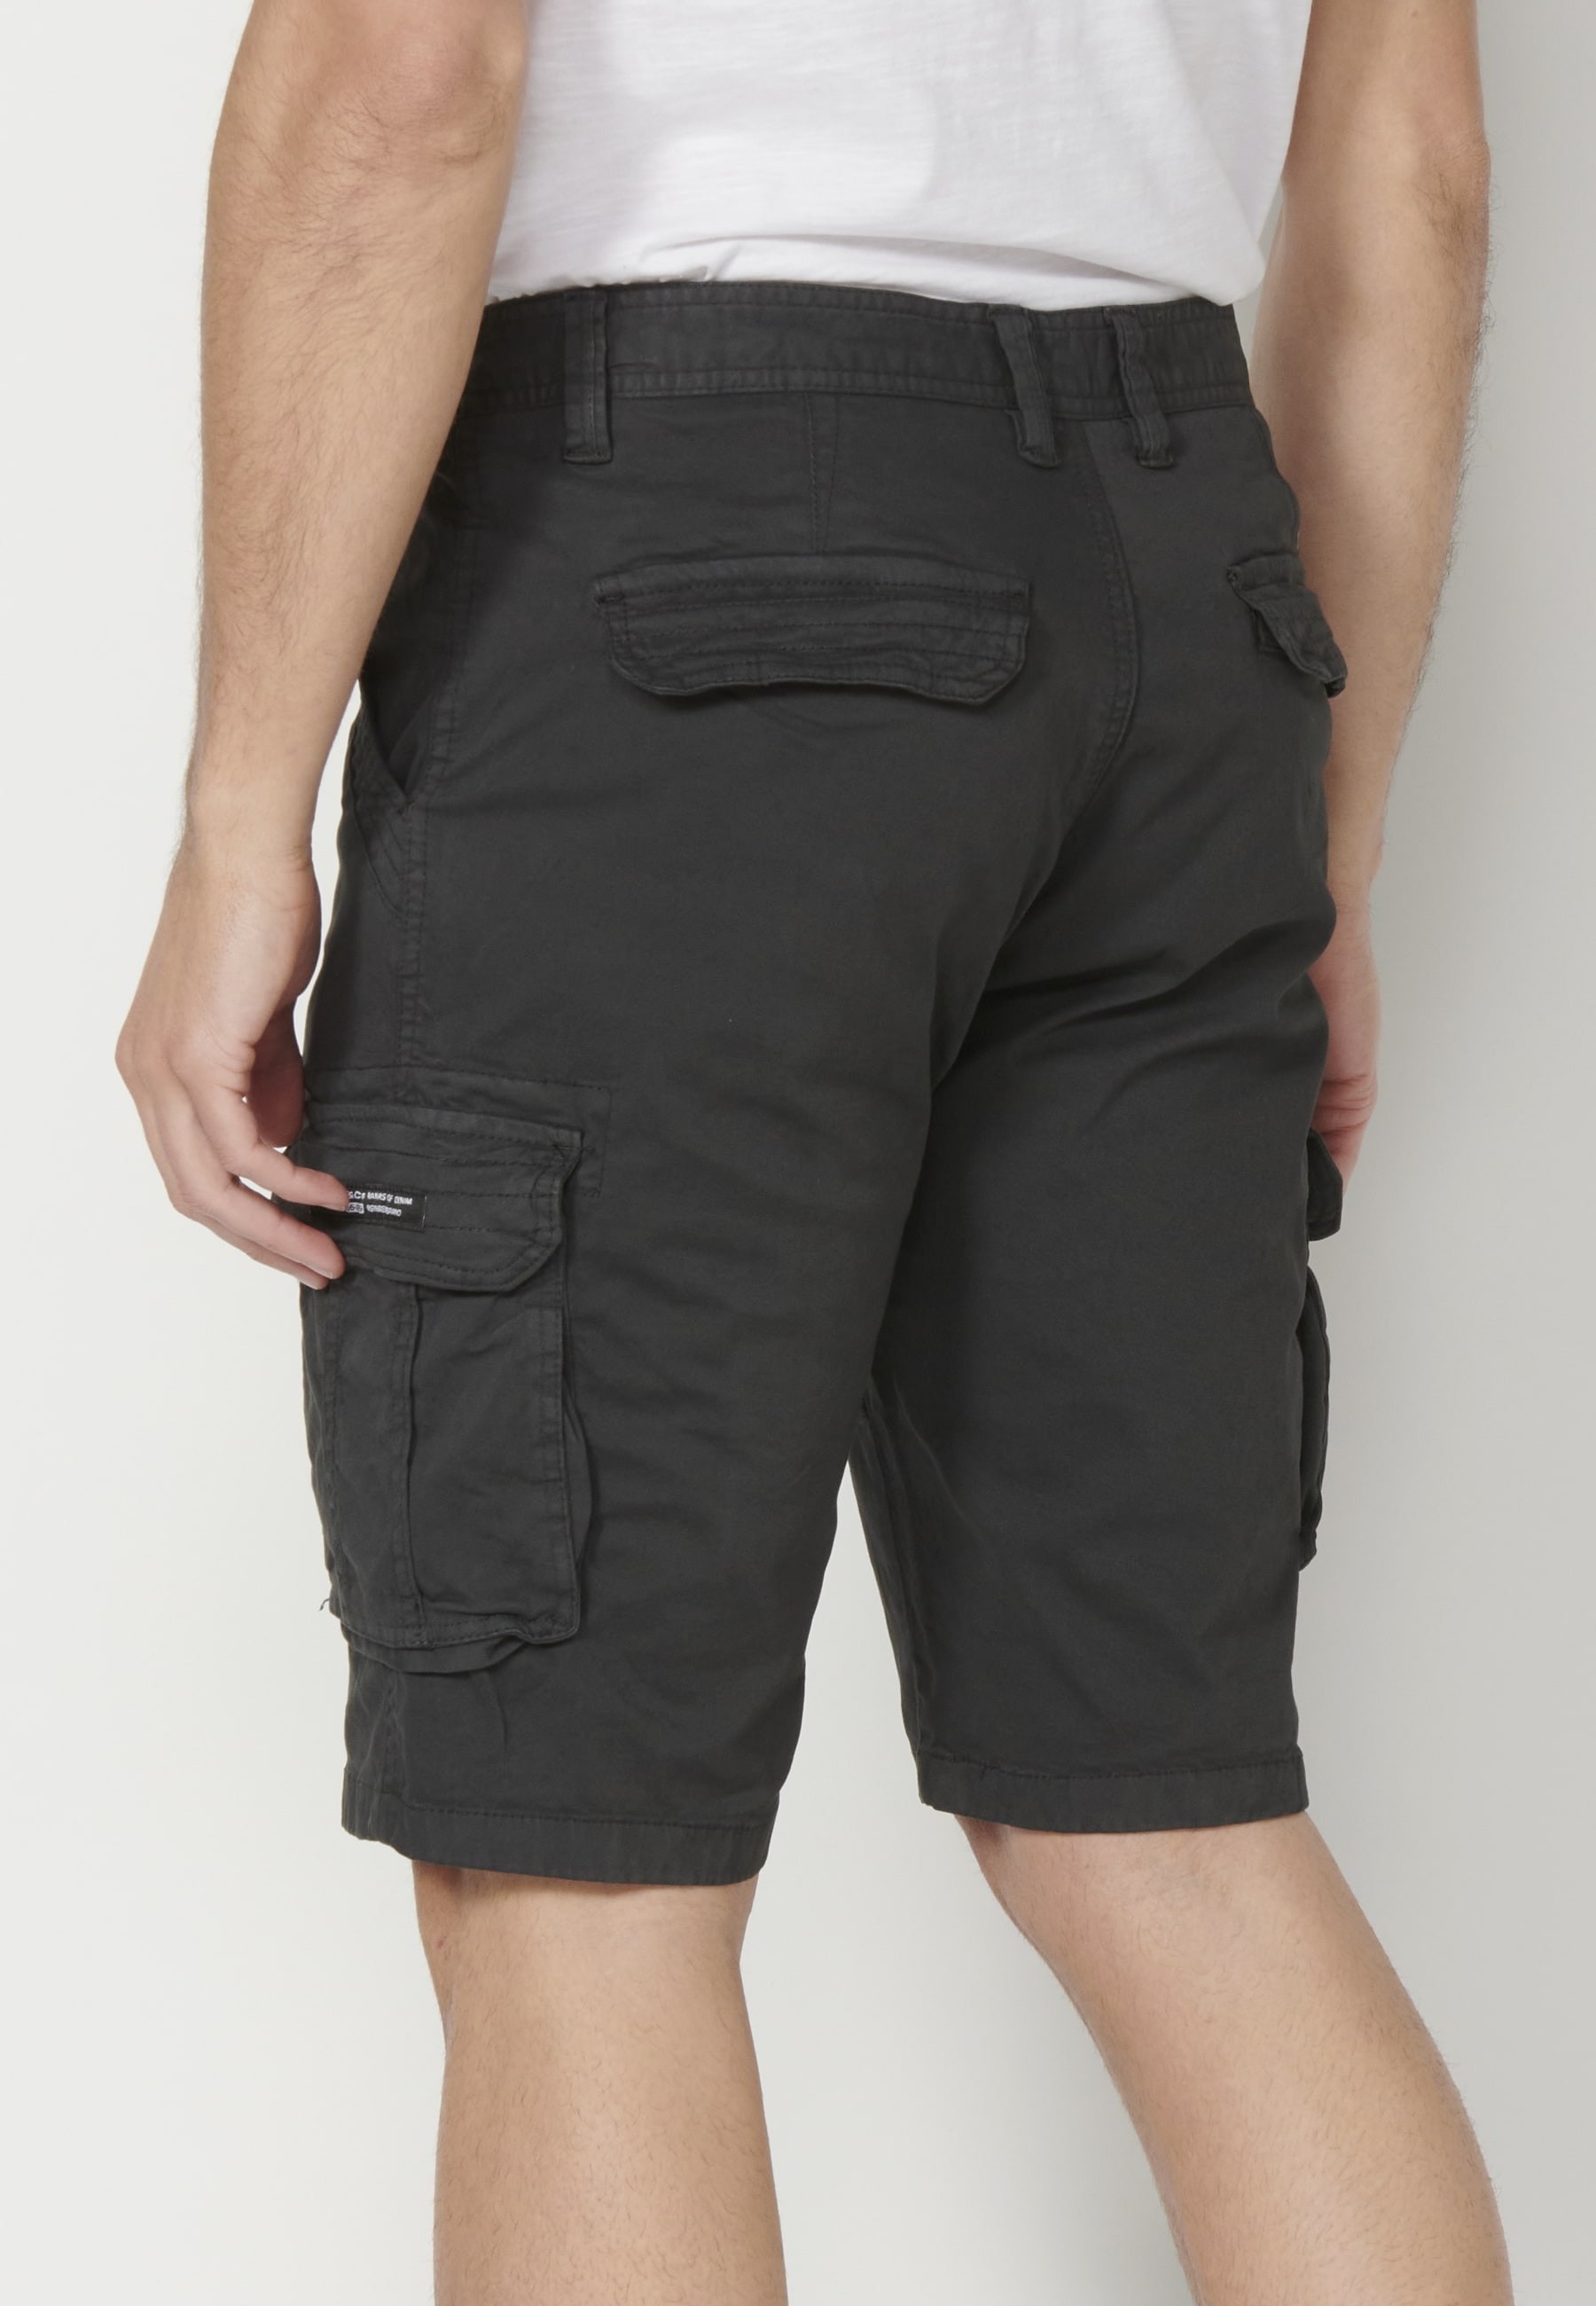 Pantalón corto Bermuda estilo cargo color Negro para Hombre